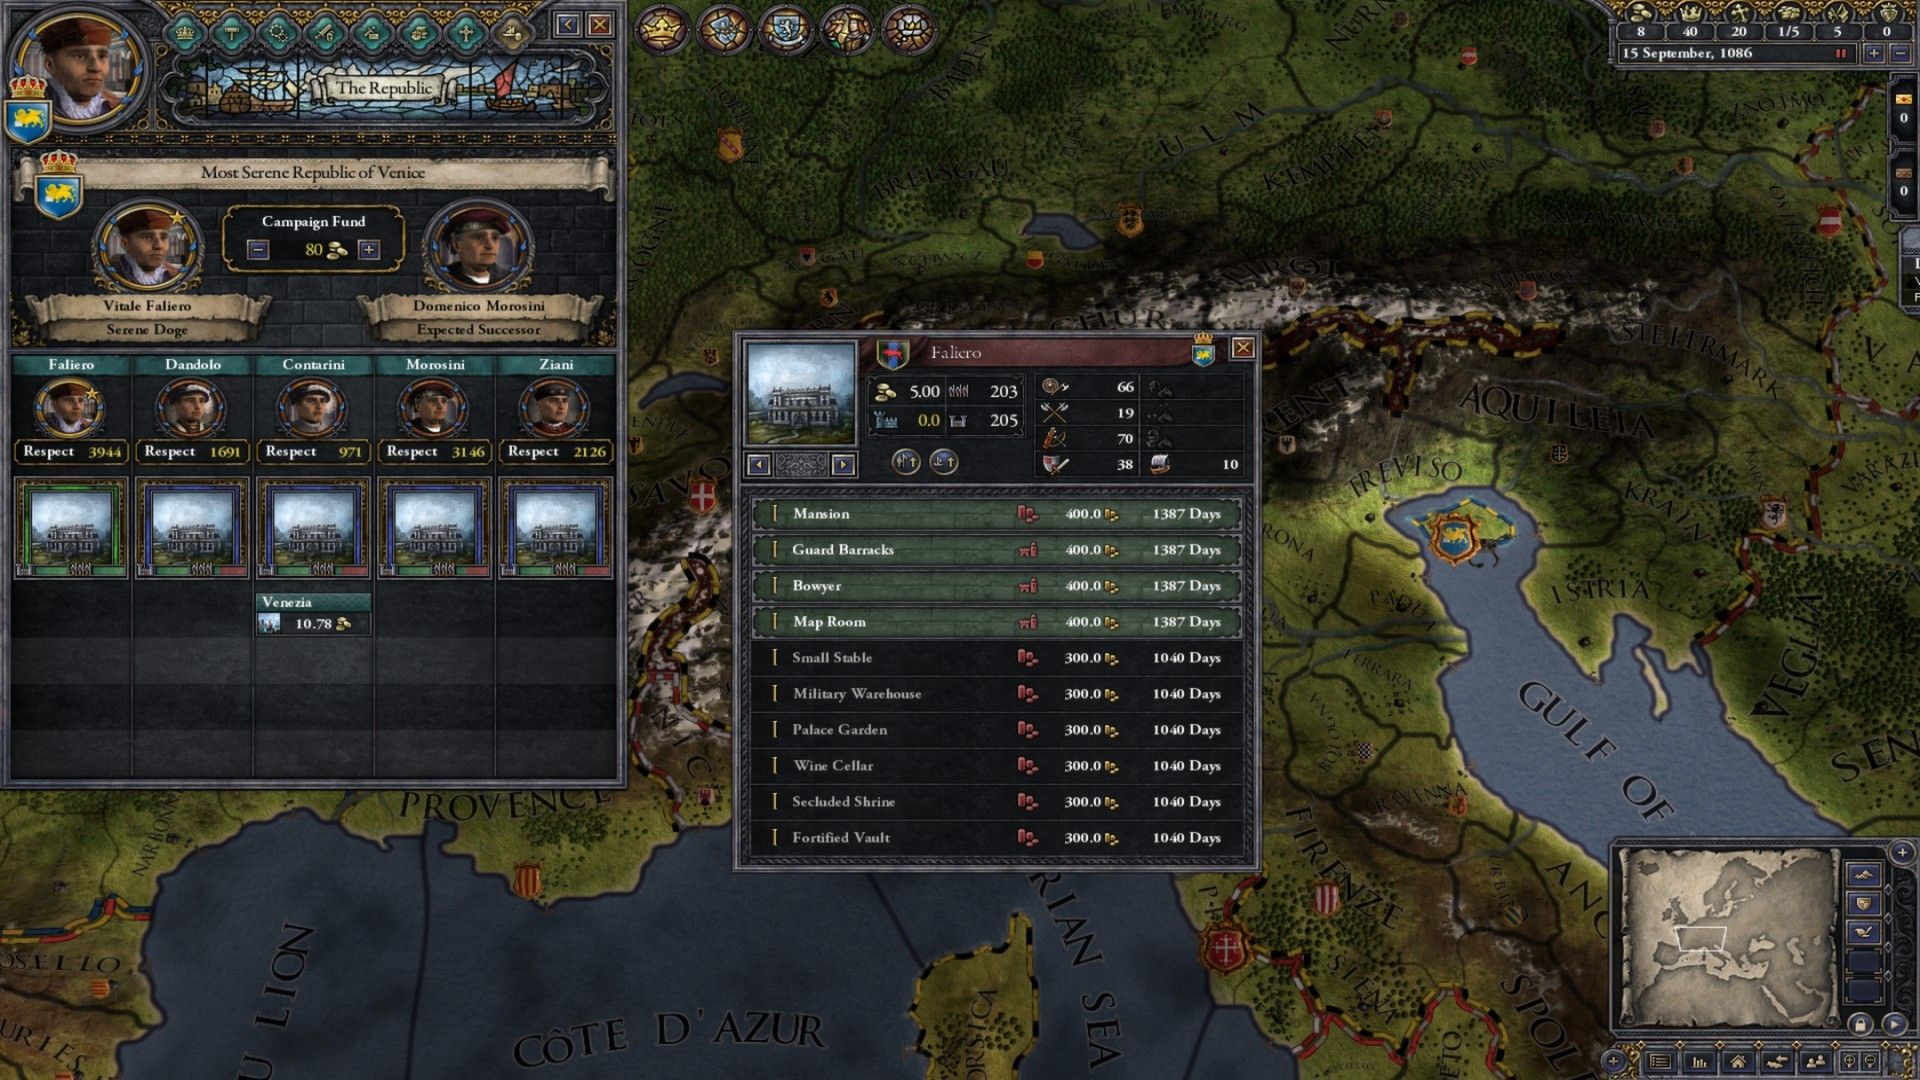 Скриншот-3 из игры Crusader Kings II: The Republic